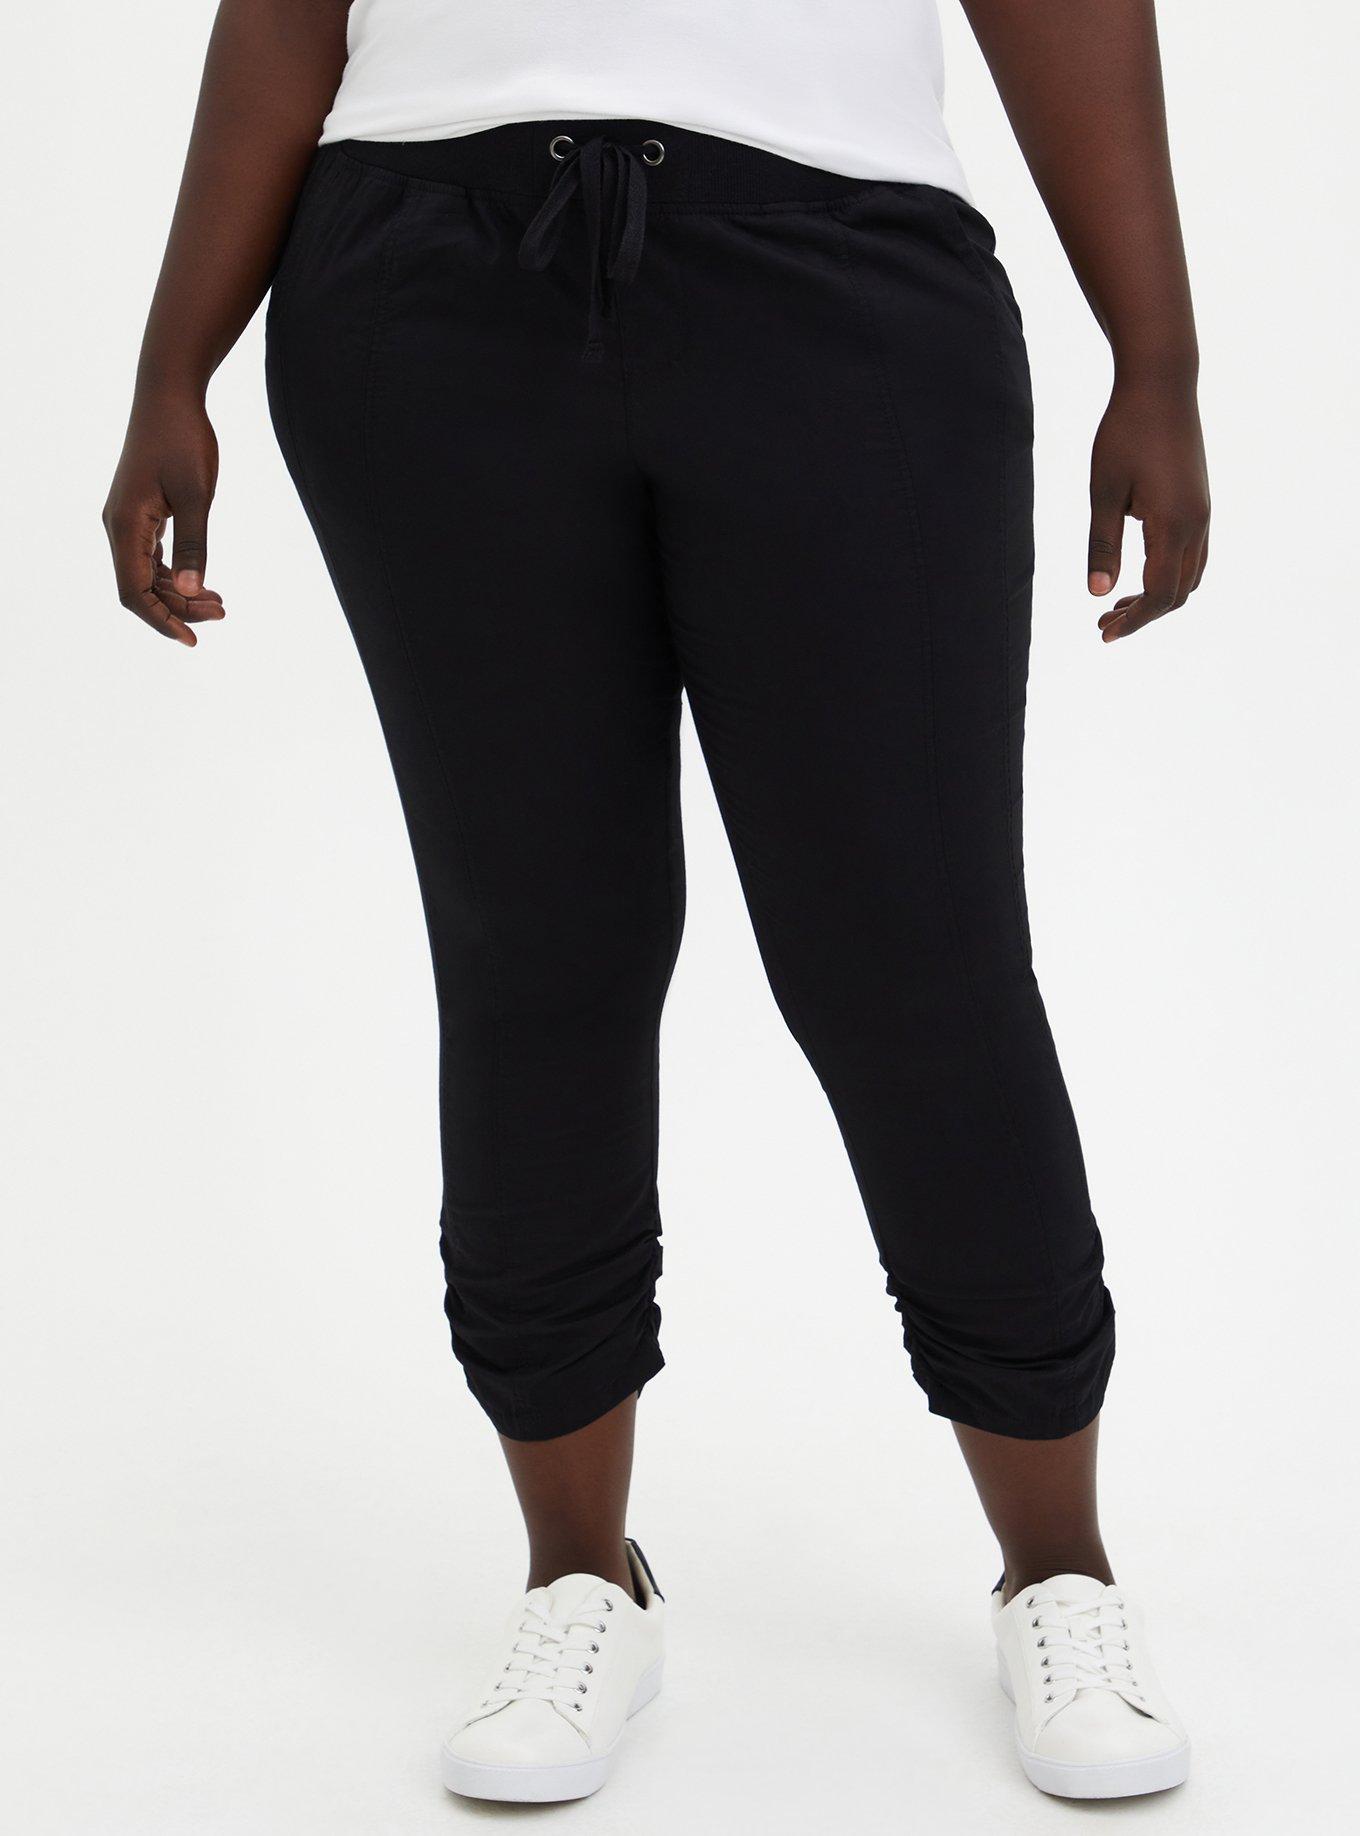 Torrid Black Active Pants Size 2X Plus (2) (Plus) - 56% off